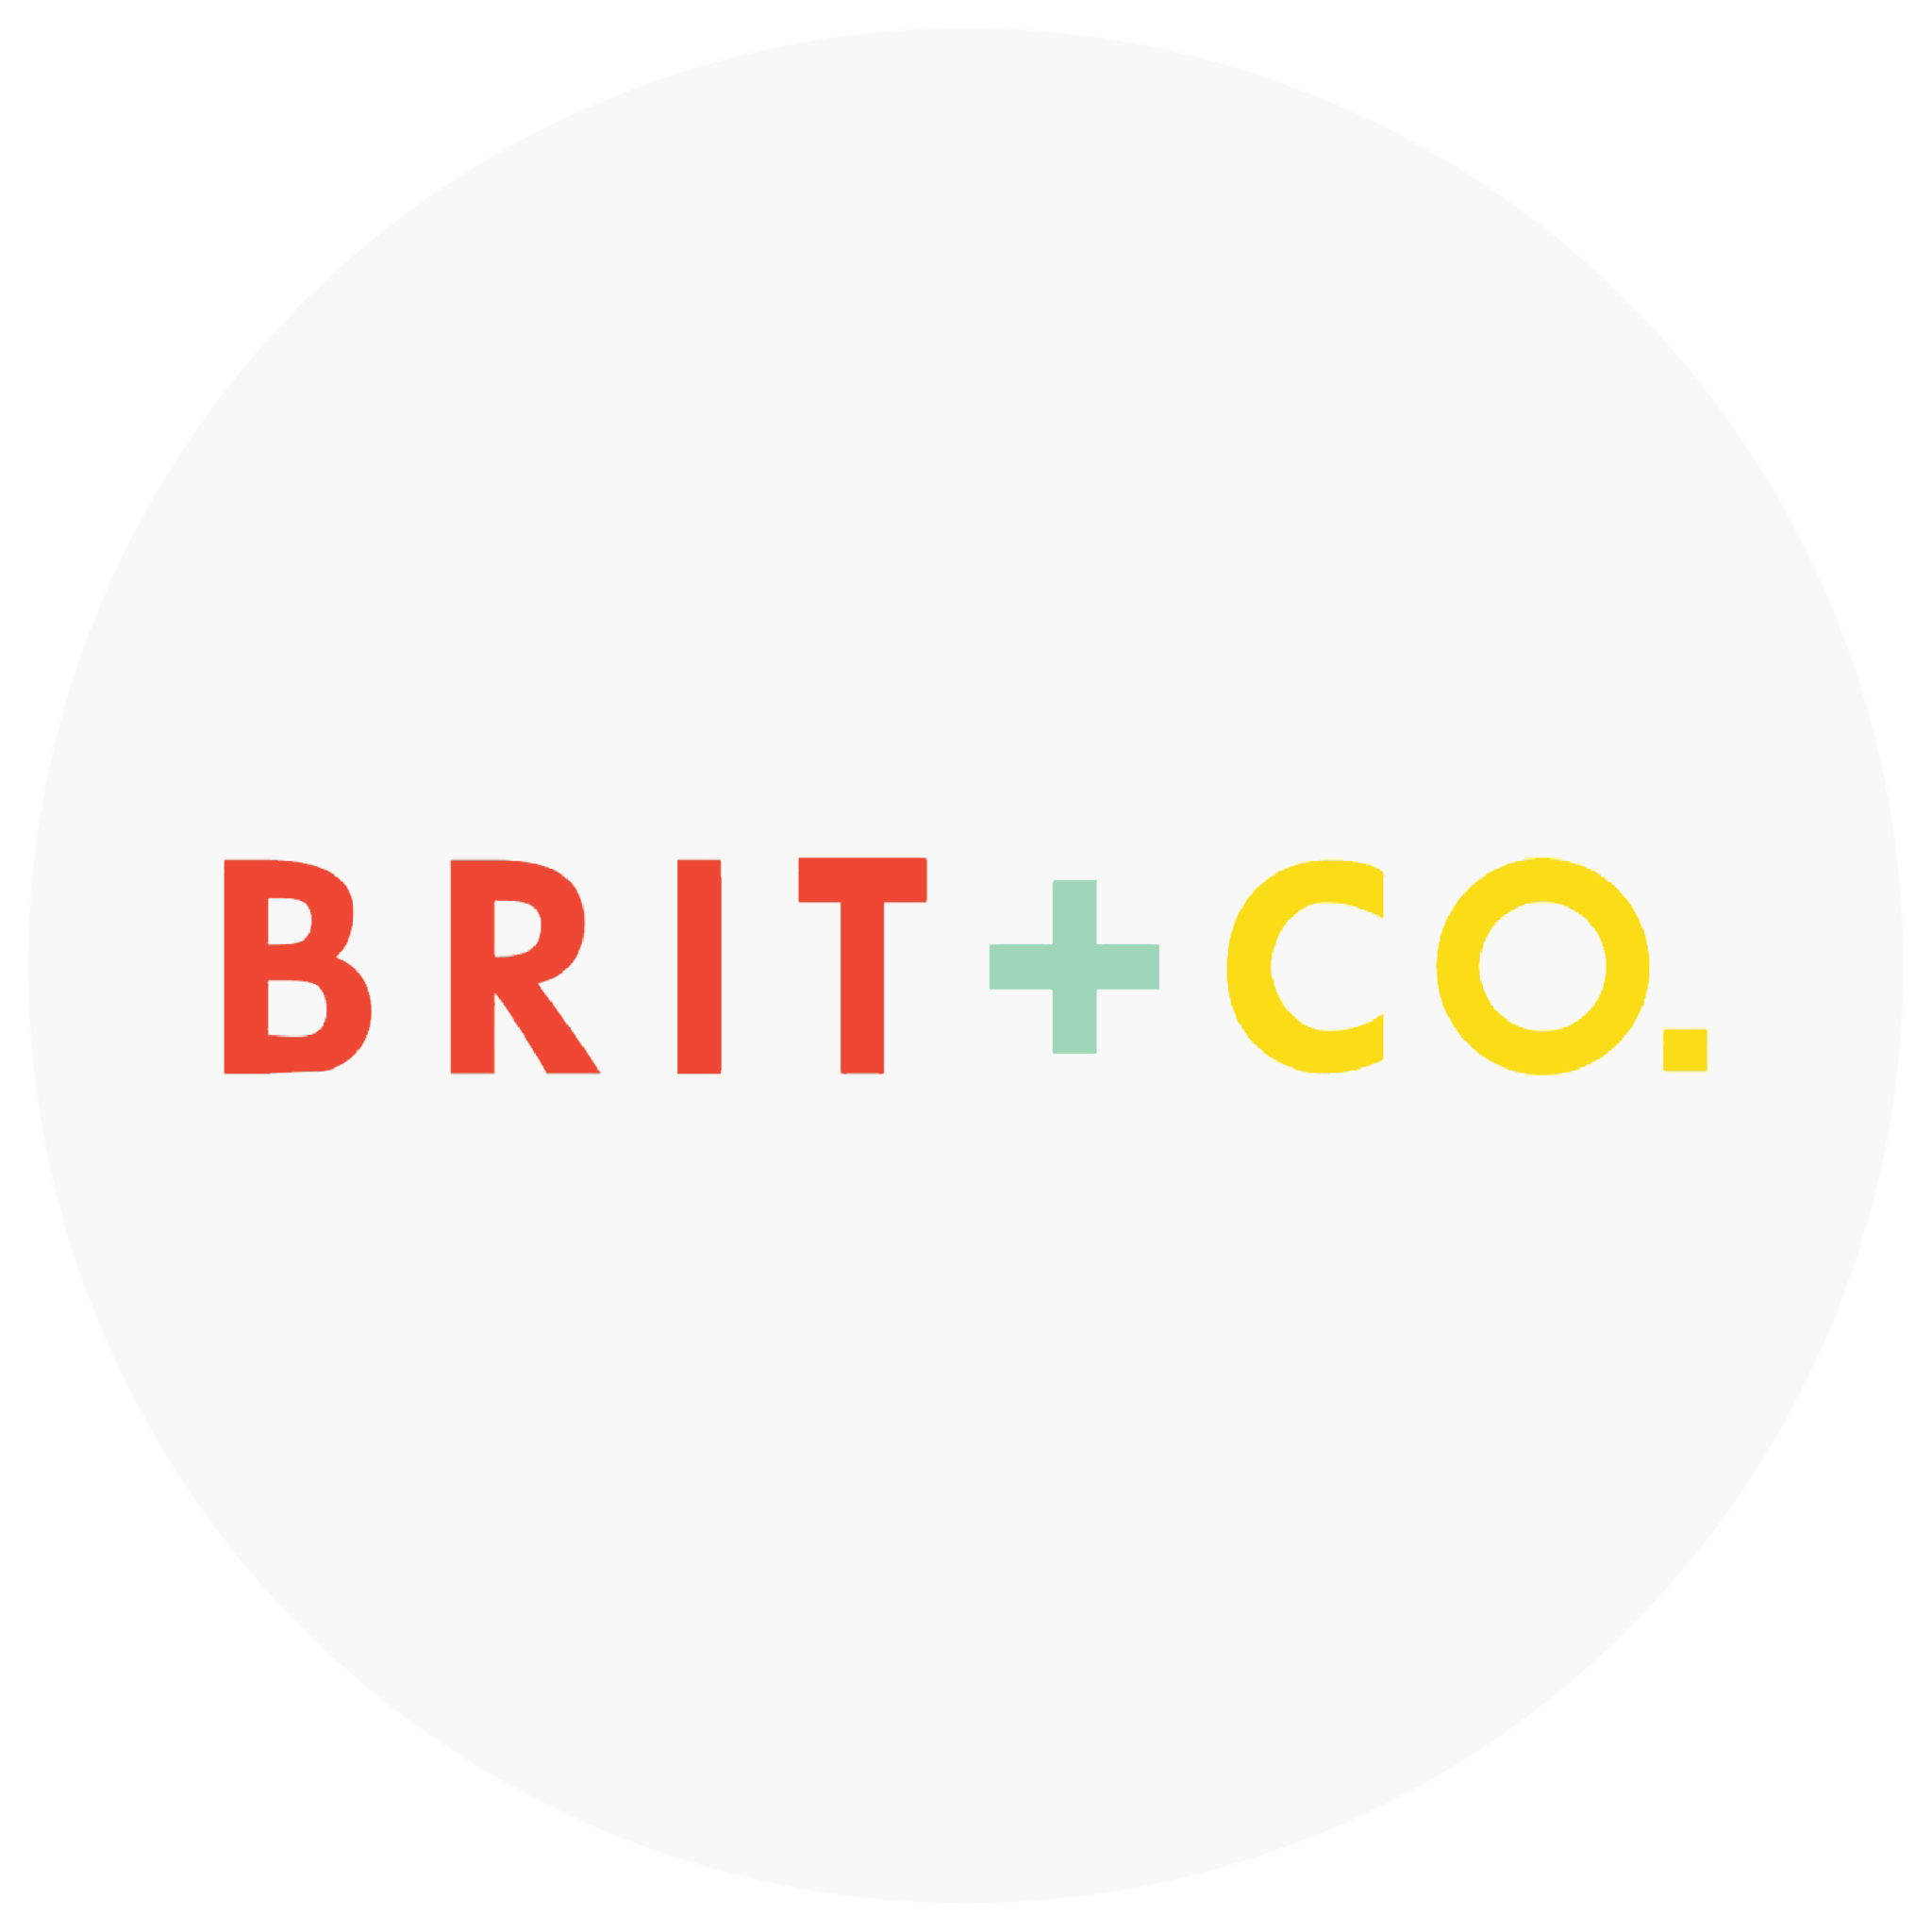 Brit + Co